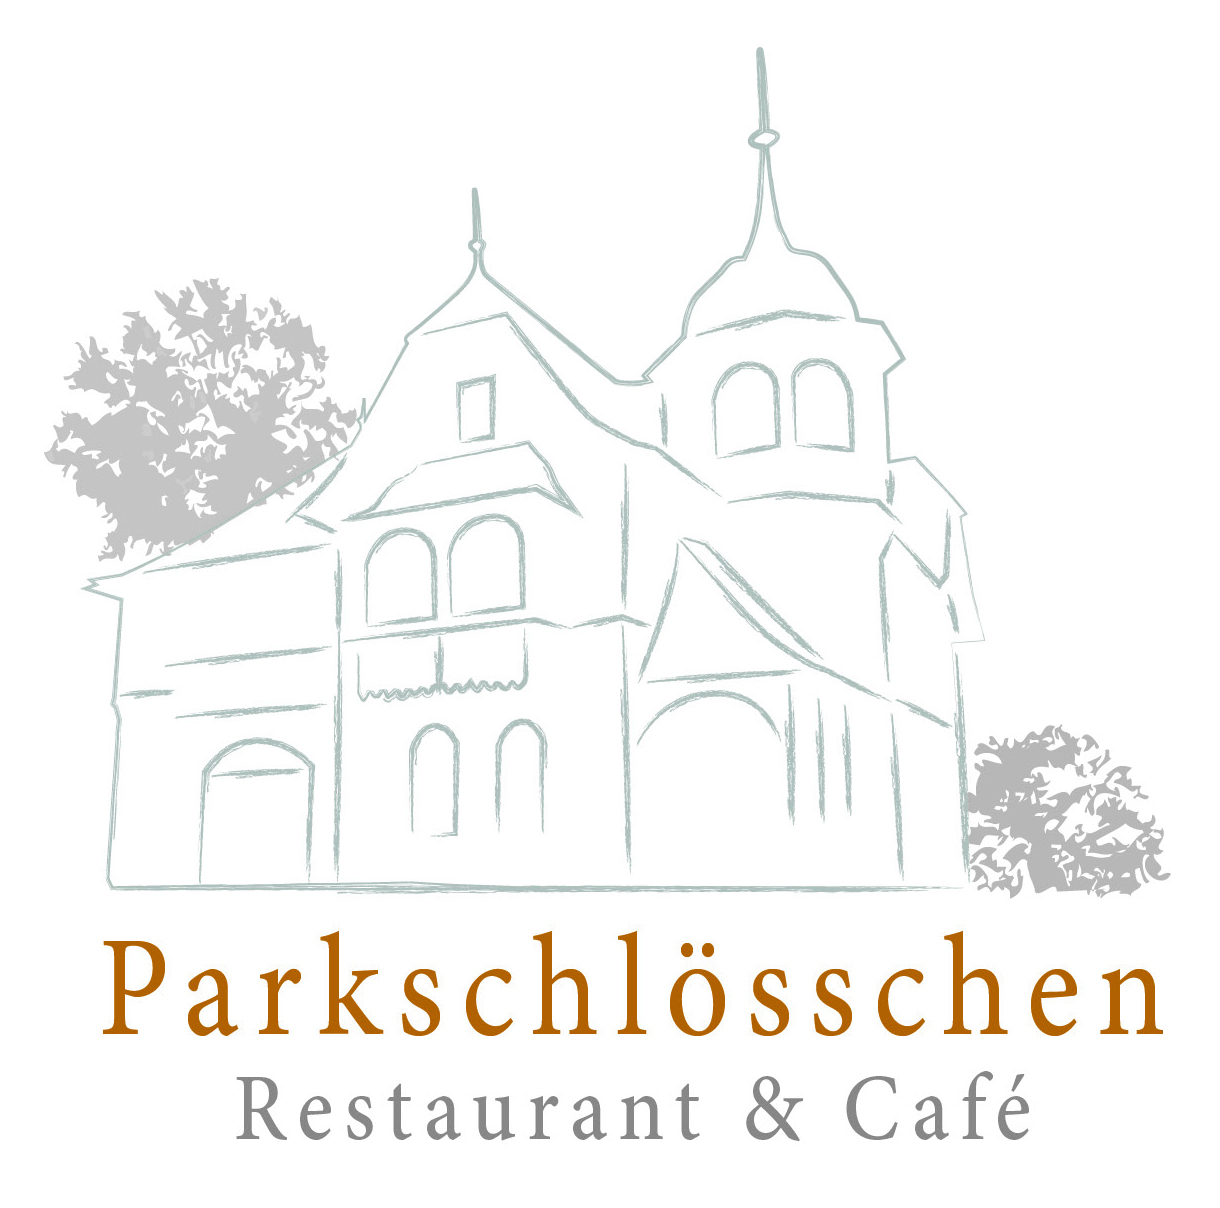 Bild 1 Restaurant & Cafe Parkschlösschen GmbH in Wuppertal